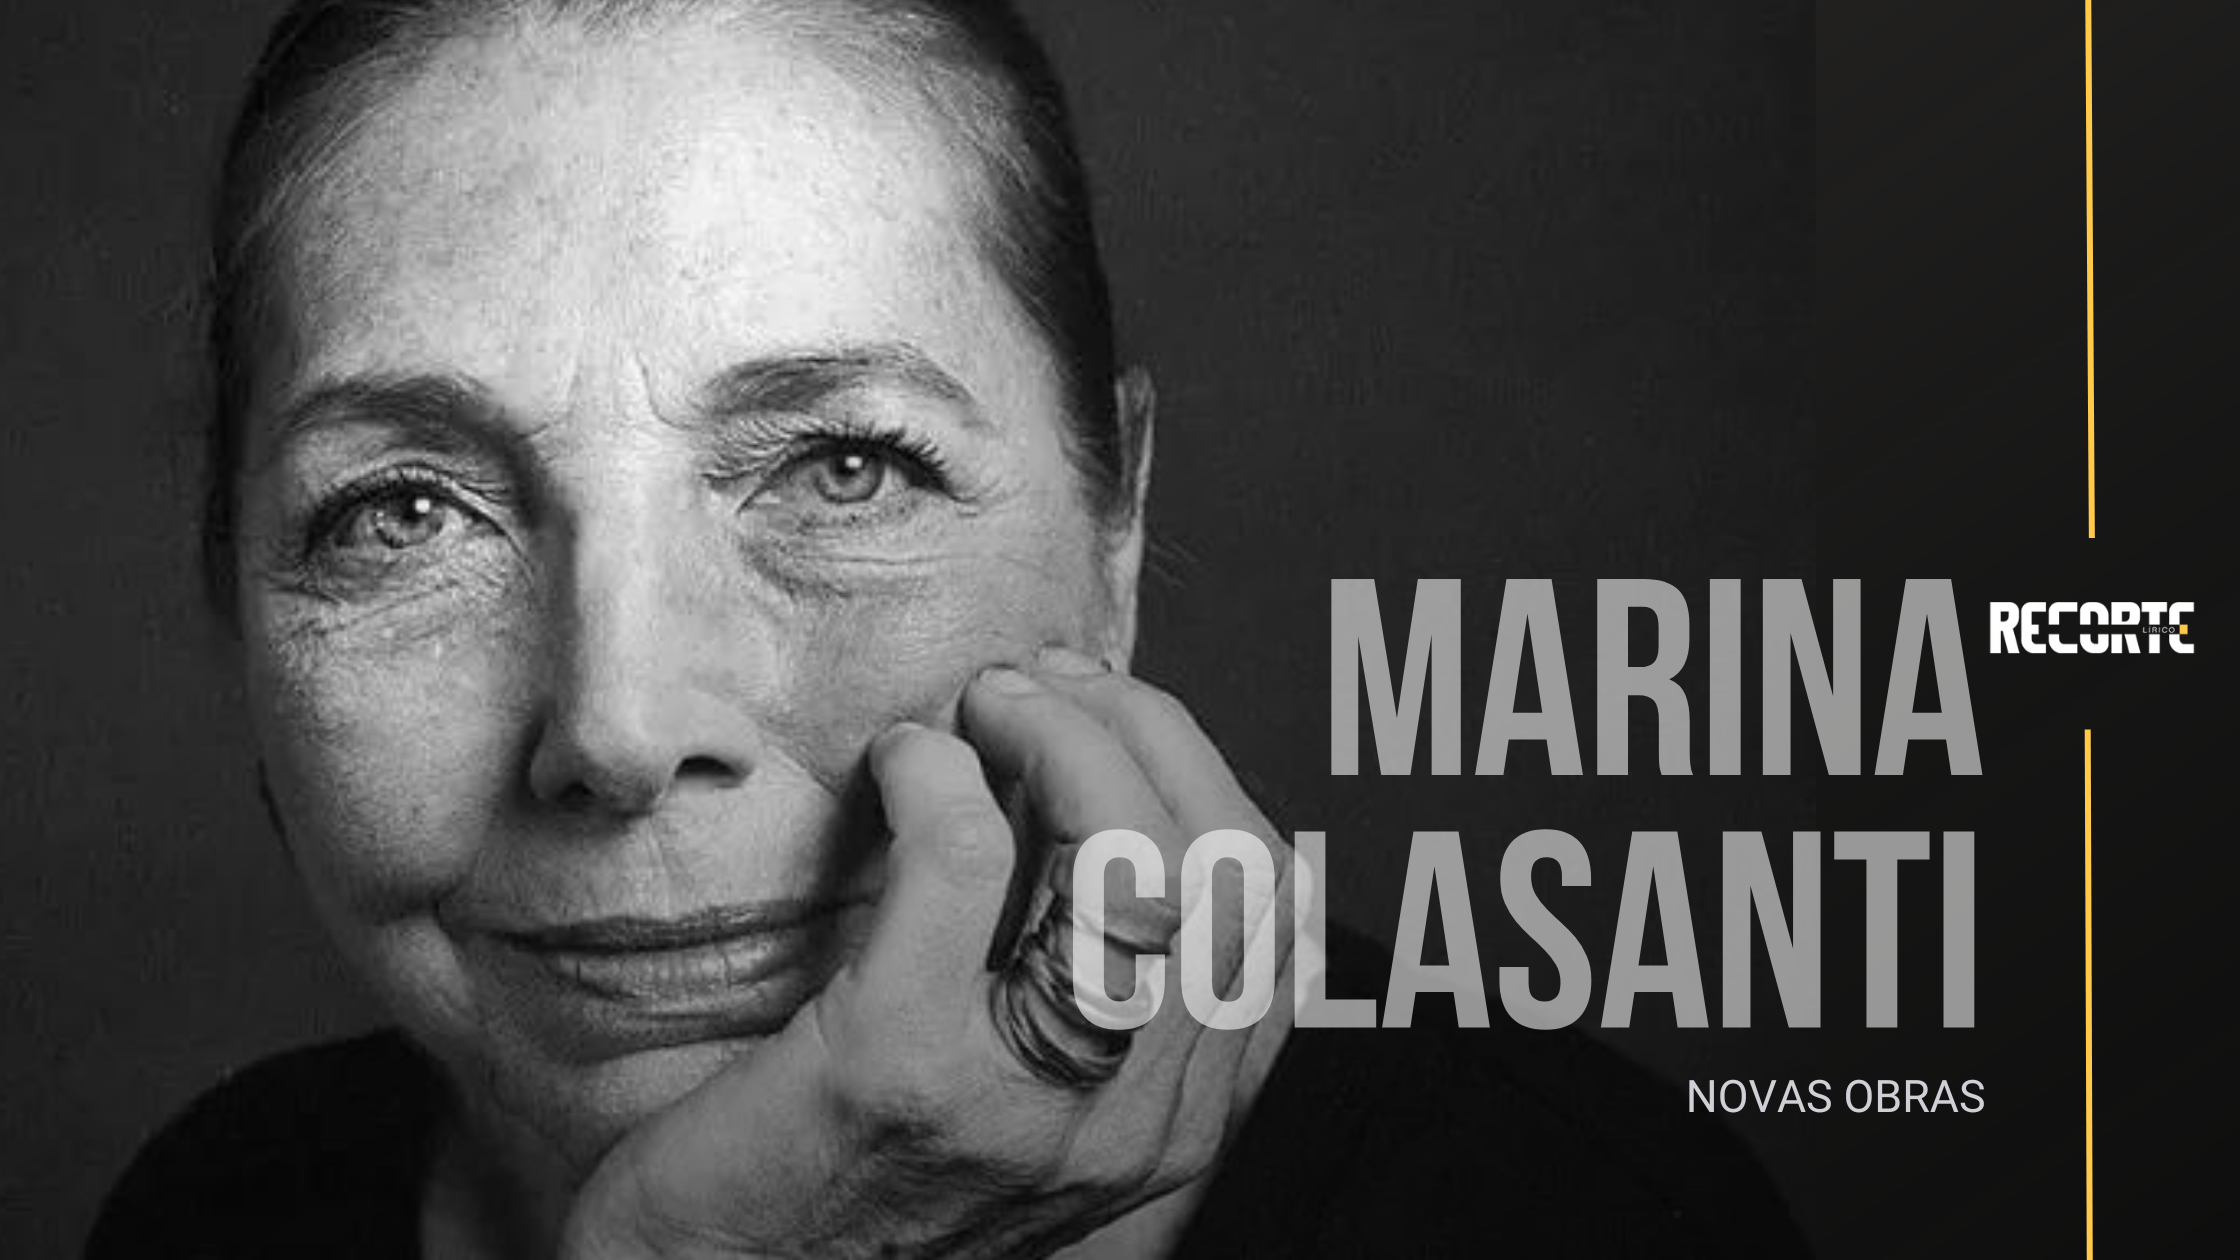 Marina Colasanti Mostra a Potência de sua Literatura em Dois Novos Livros 10